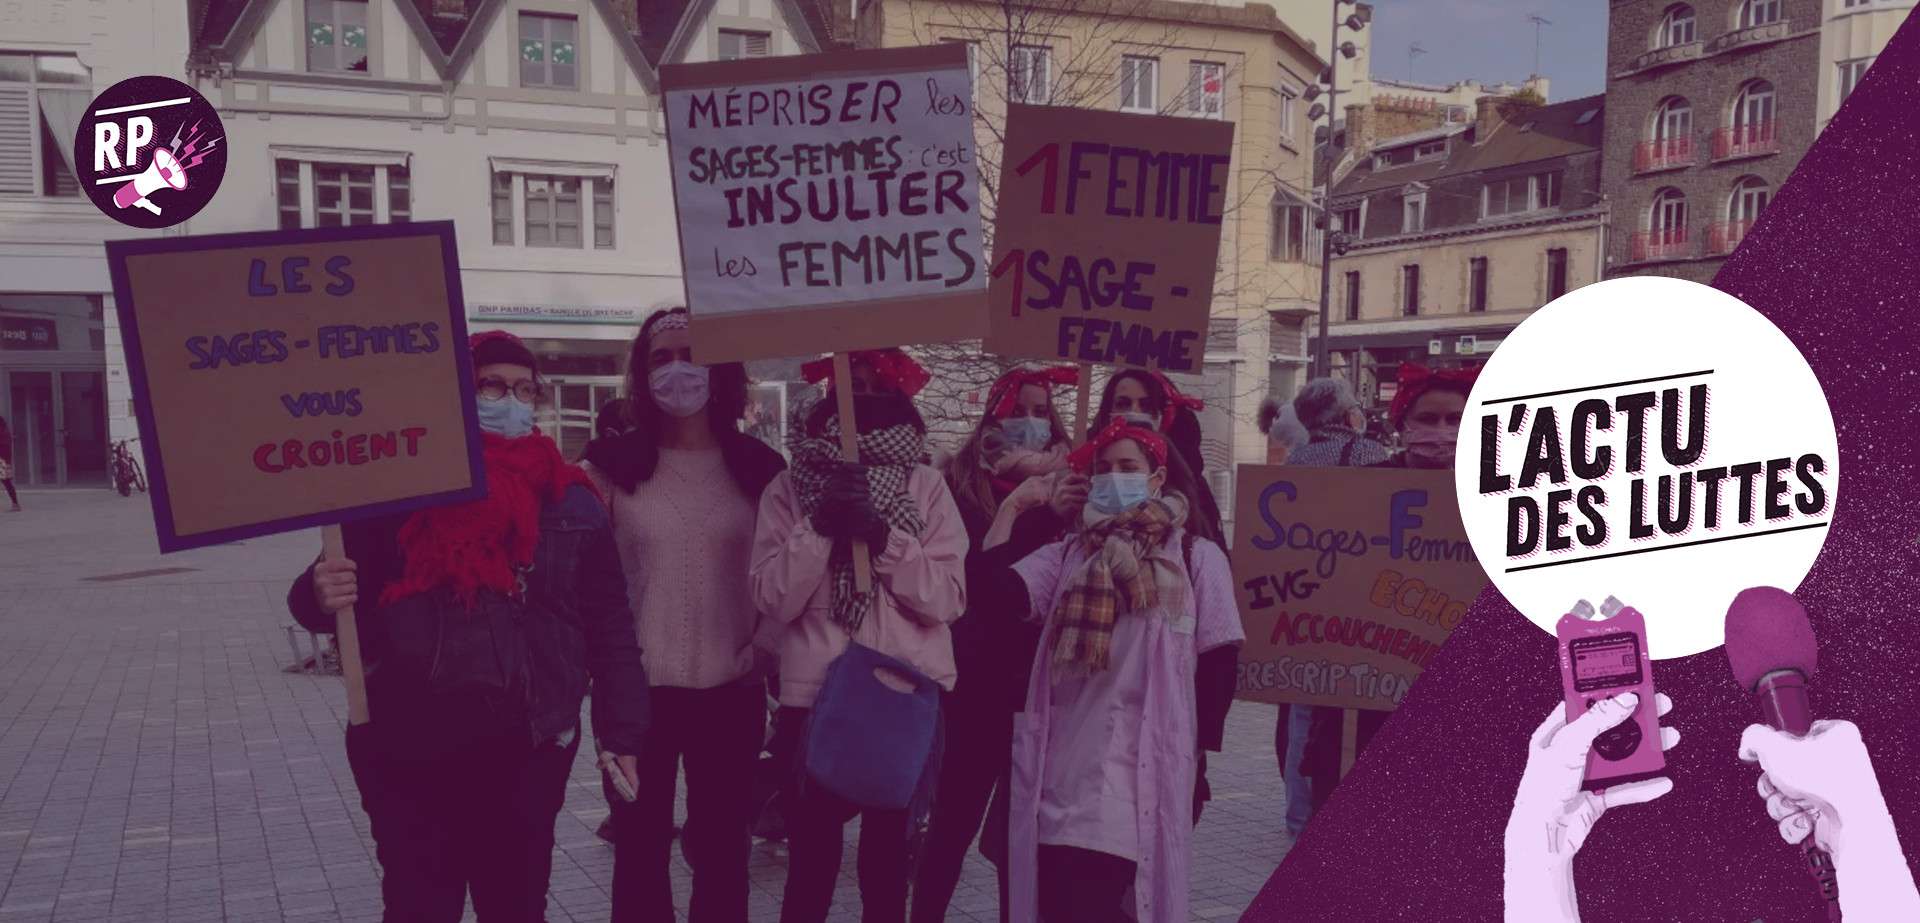 sages-femmes grève féministe 8 mars Saint Brieuc